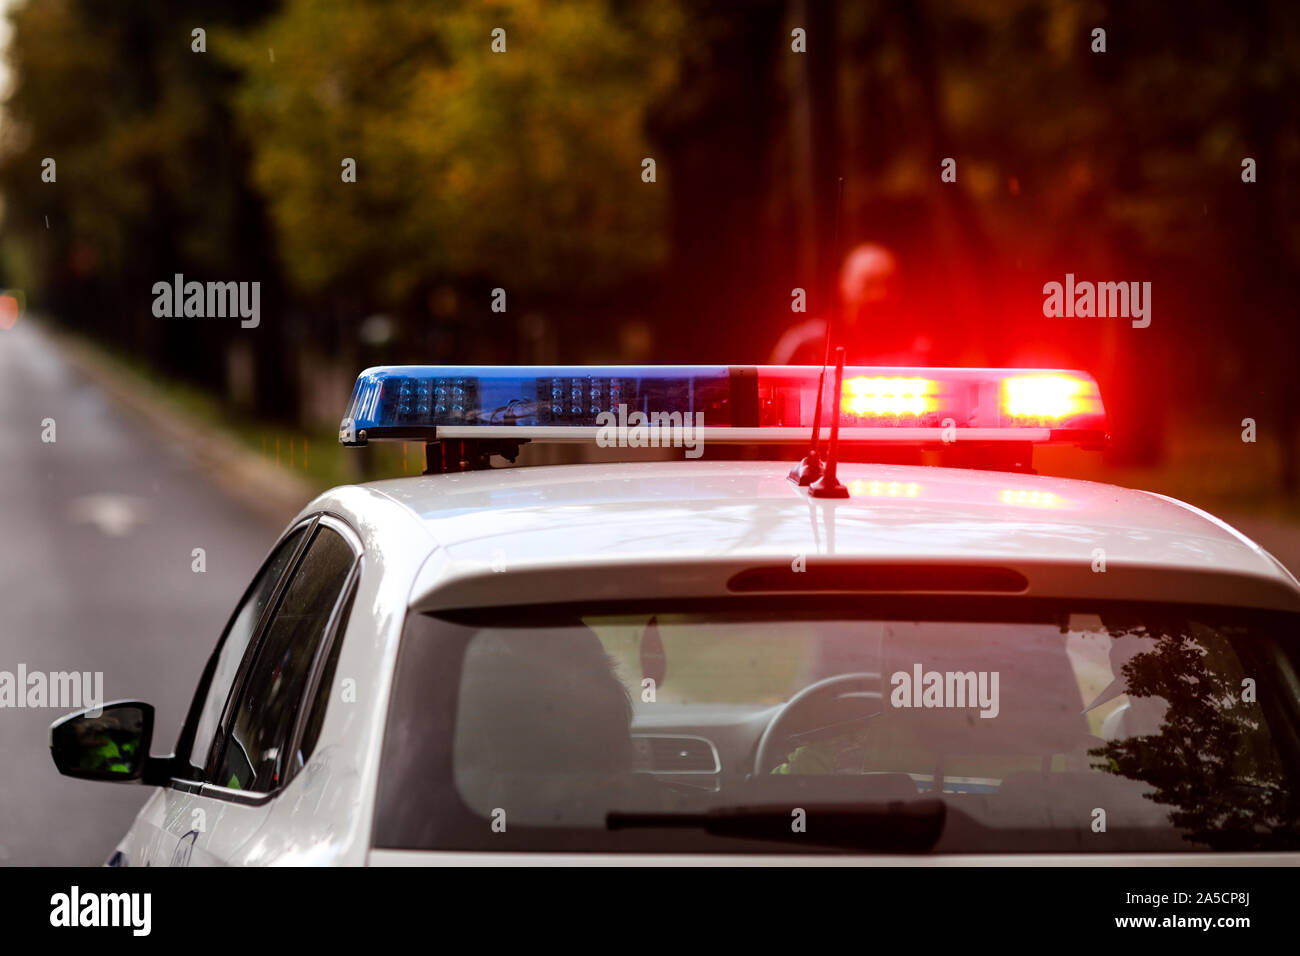 https://c8.alamy.com/compde/2a5cp8j/details-mit-den-roten-und-blauen-lichtern-sirene-auf-einem-polizei-auto-2a5cp8j.jpg